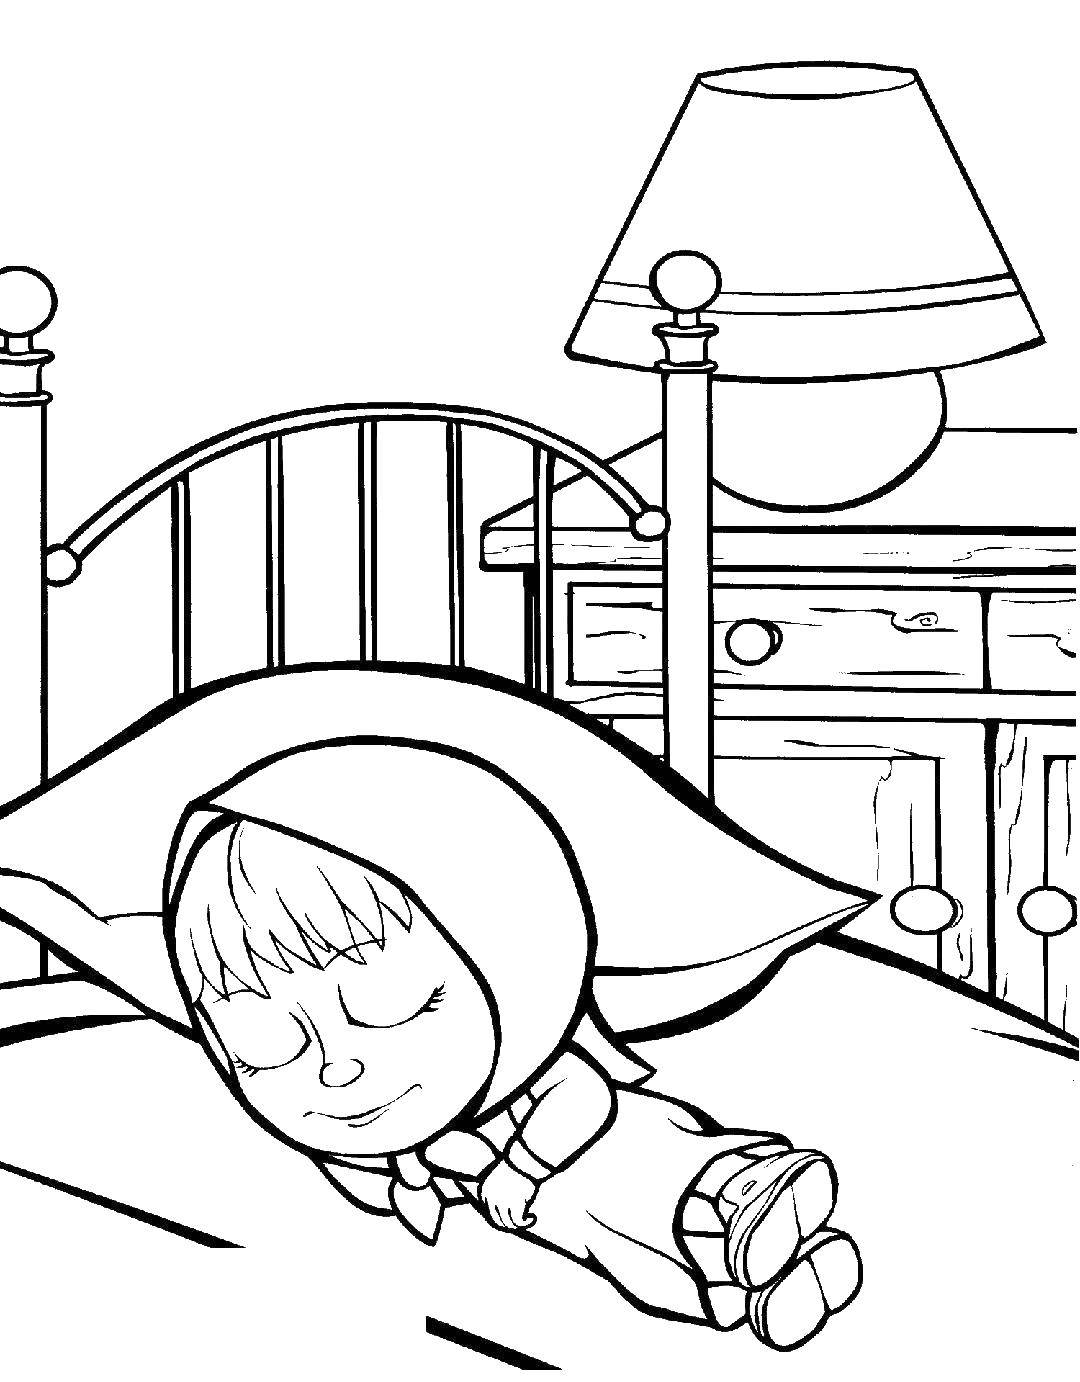 Розмальовки  Маша спить на ліжку міші. Завантажити розмальовку Маша, Ведмідь.  Роздрукувати ,маша і ведмідь,